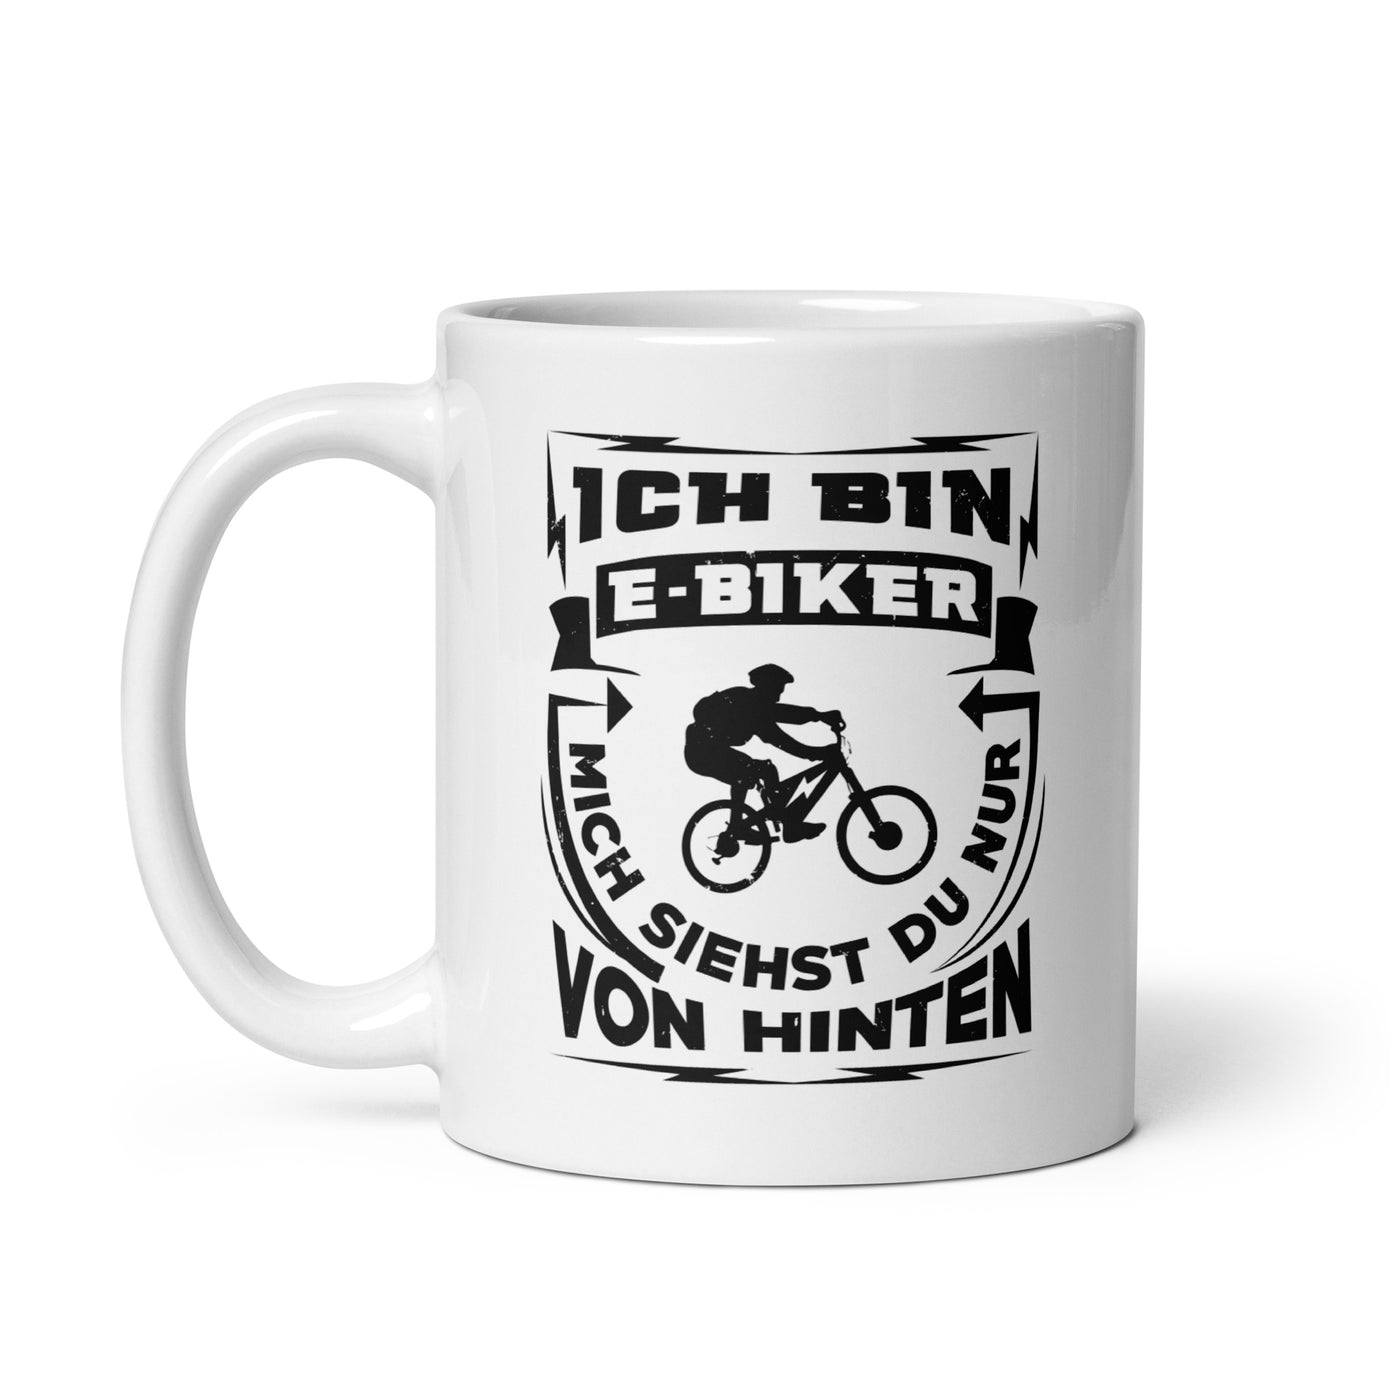 Bin Ein E-Biker - Siehst Mich Von Hinten - Tasse e-bike 11oz